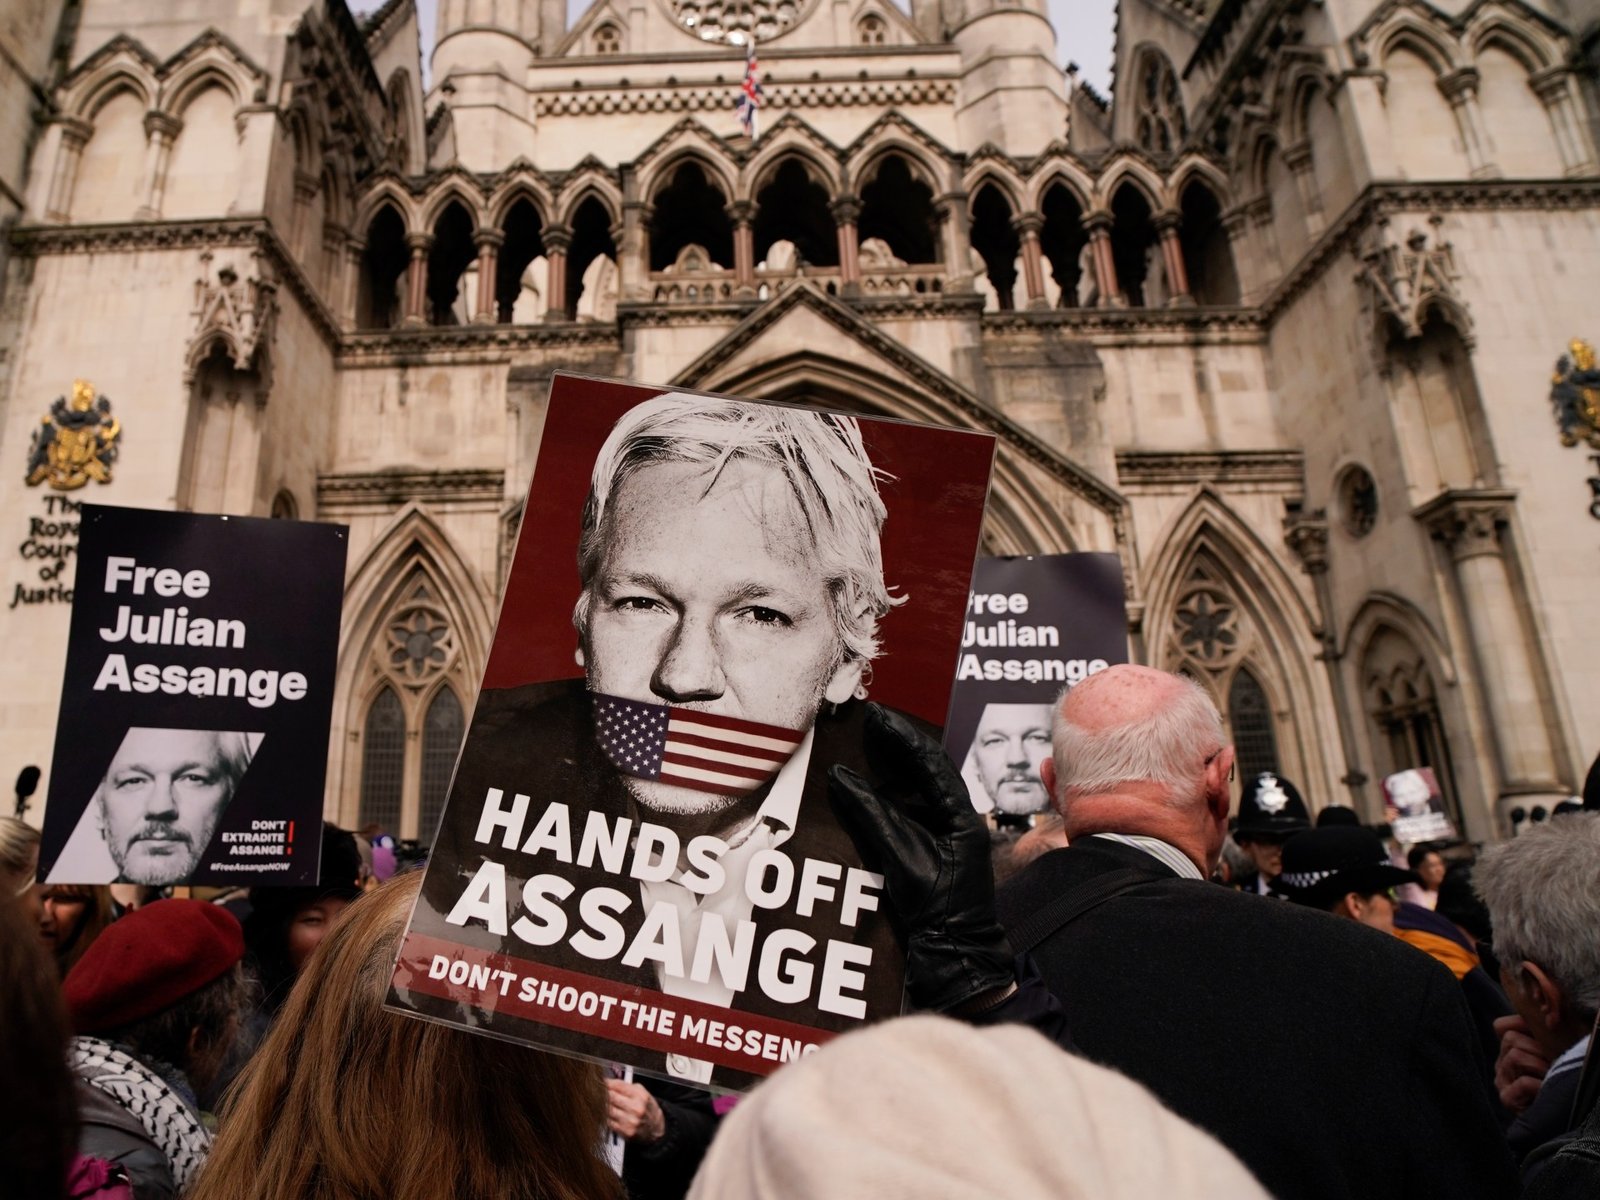 Julian Assange is free Wikileaks founder freed in deal with US | Julian Assange News